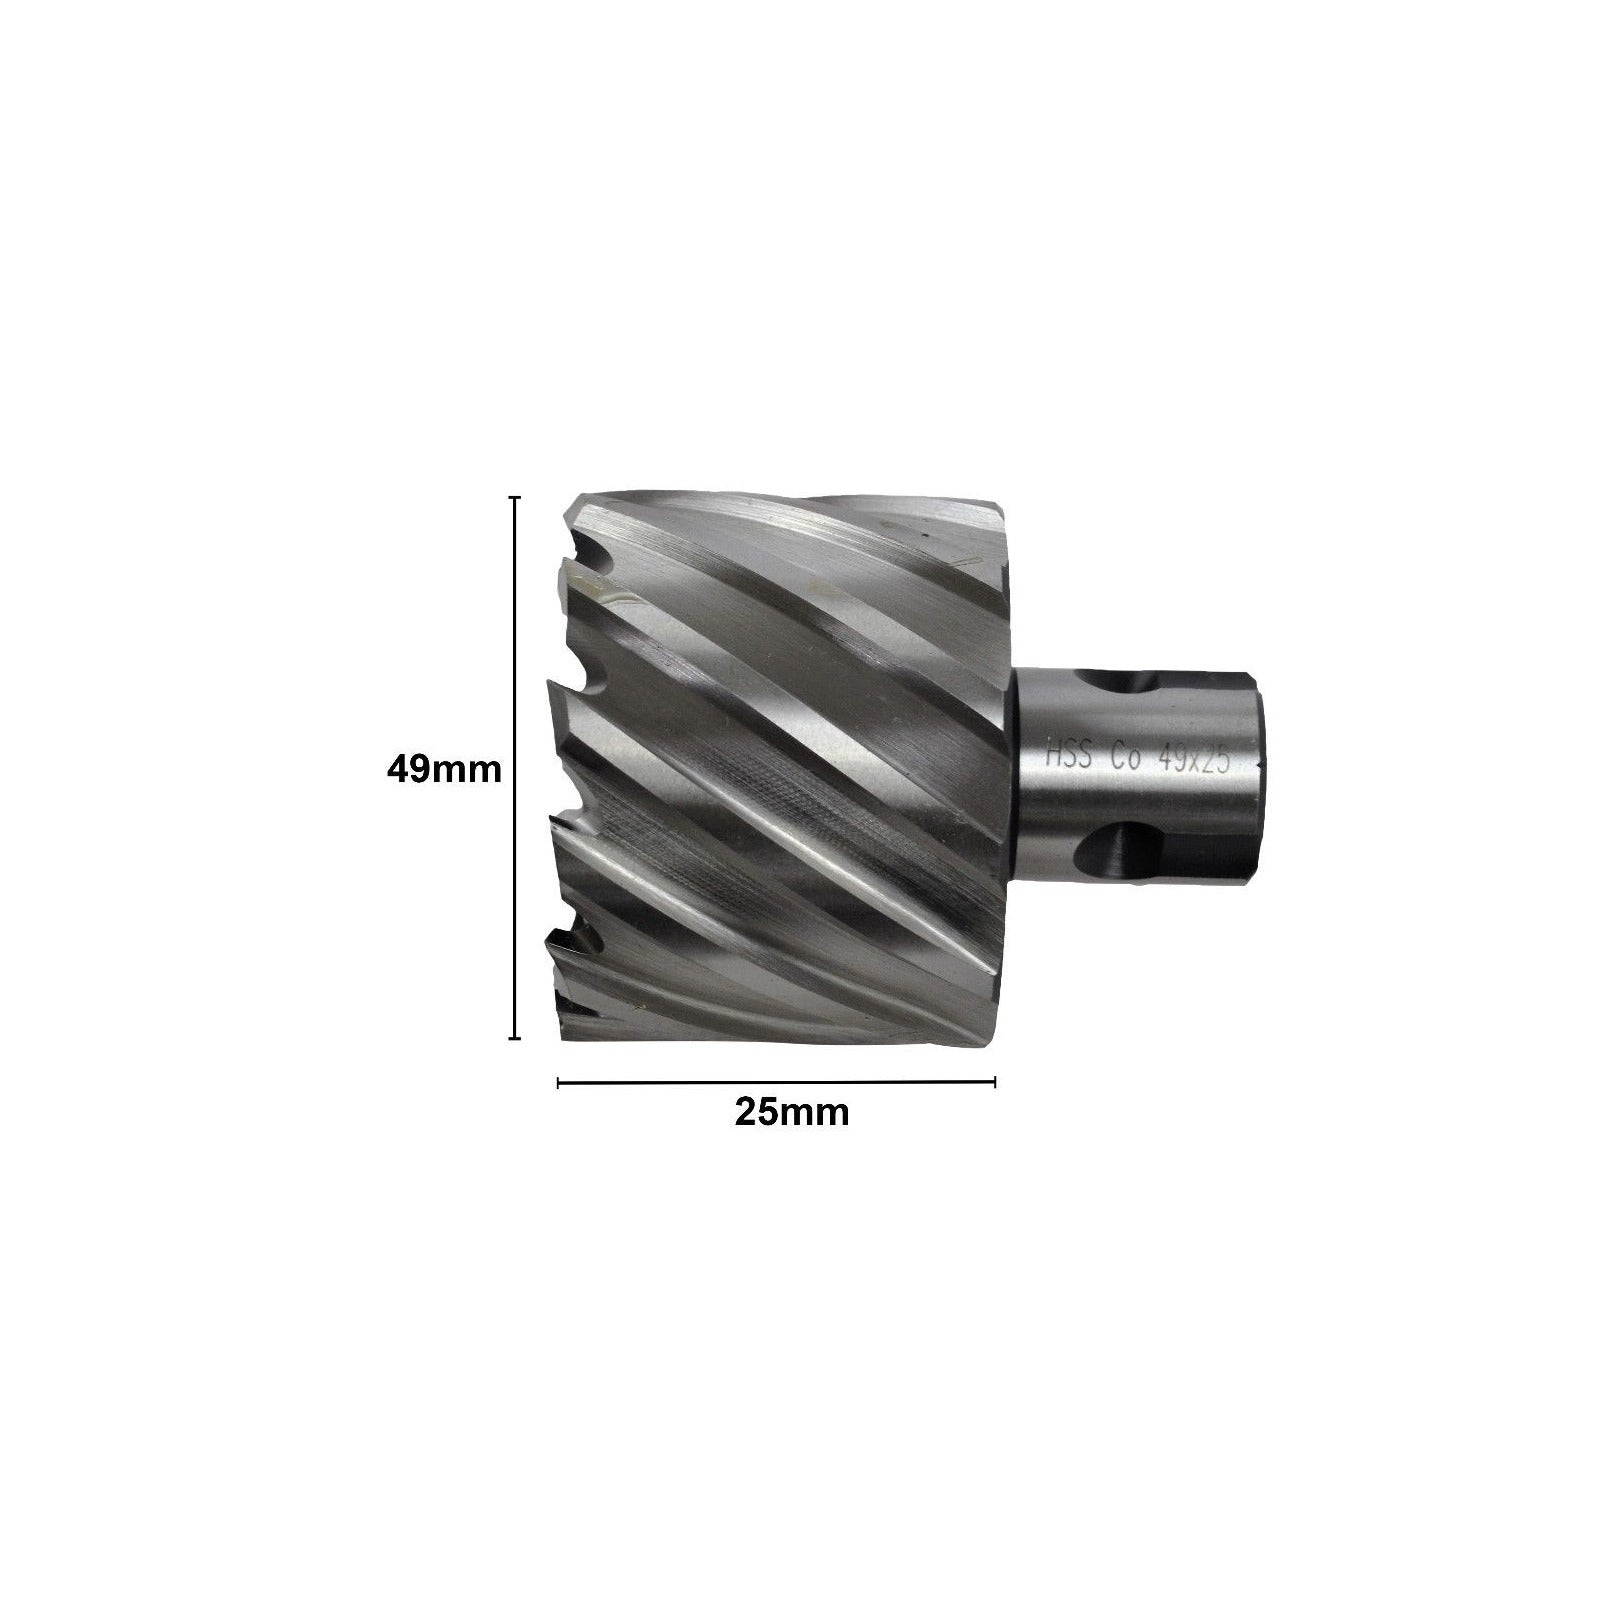 49x25 mm HSS Annular Broach Cutter ; Rotabroach Magnetic Drill ; Universal Shank